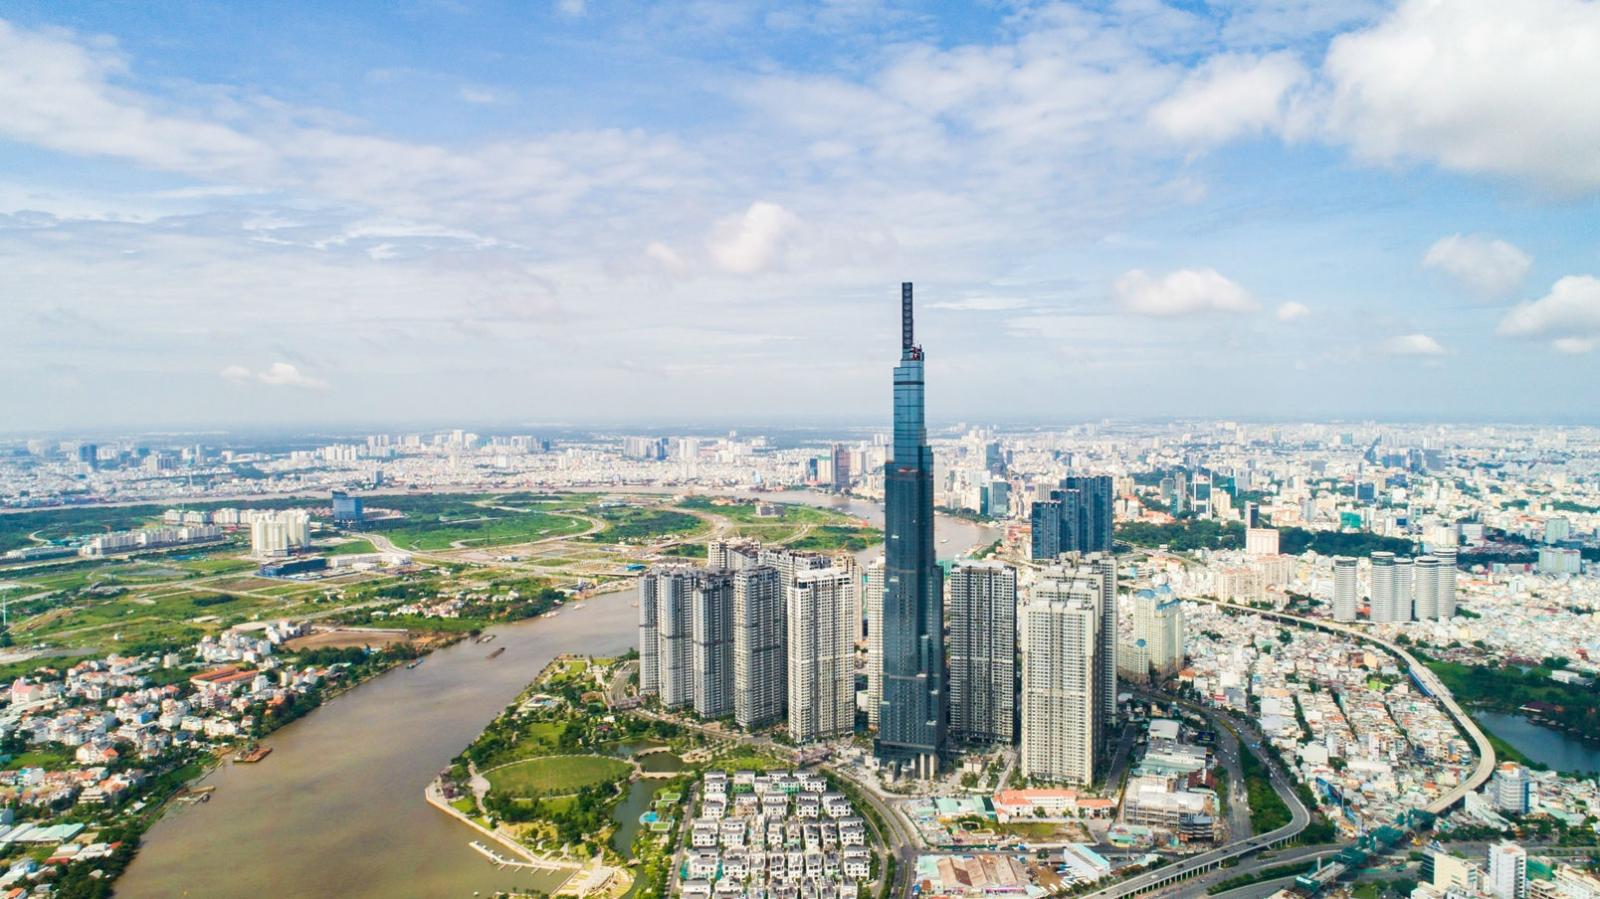 Một góc TP.HCM với tòa tháp cao 81 tầng, khu dân cư thấp tầng, cây xanh, sông nước